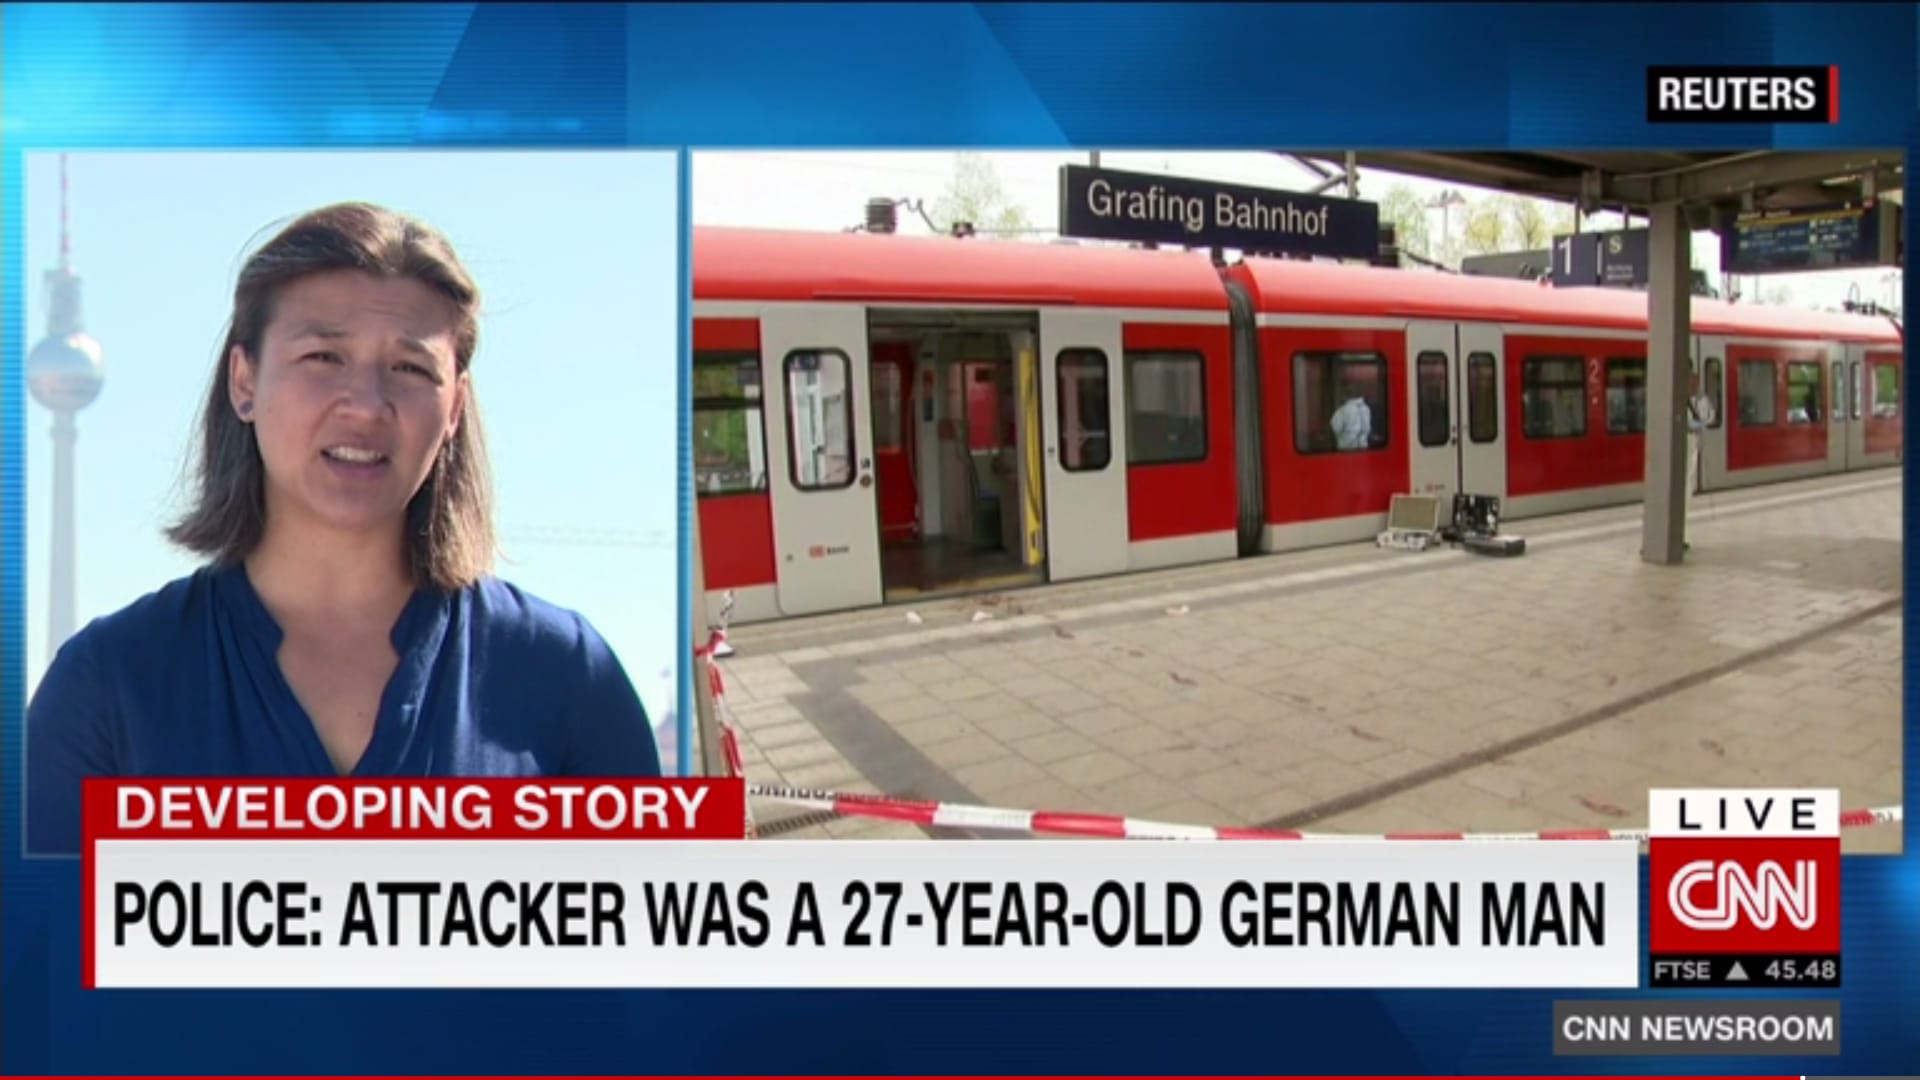 ألمانيا: قتيل و3 جرحى إثر هجوم بسكين في محطة قطار والشرطة تحقق في صحة صراخ المشتبه به بـ"الله أكبر"